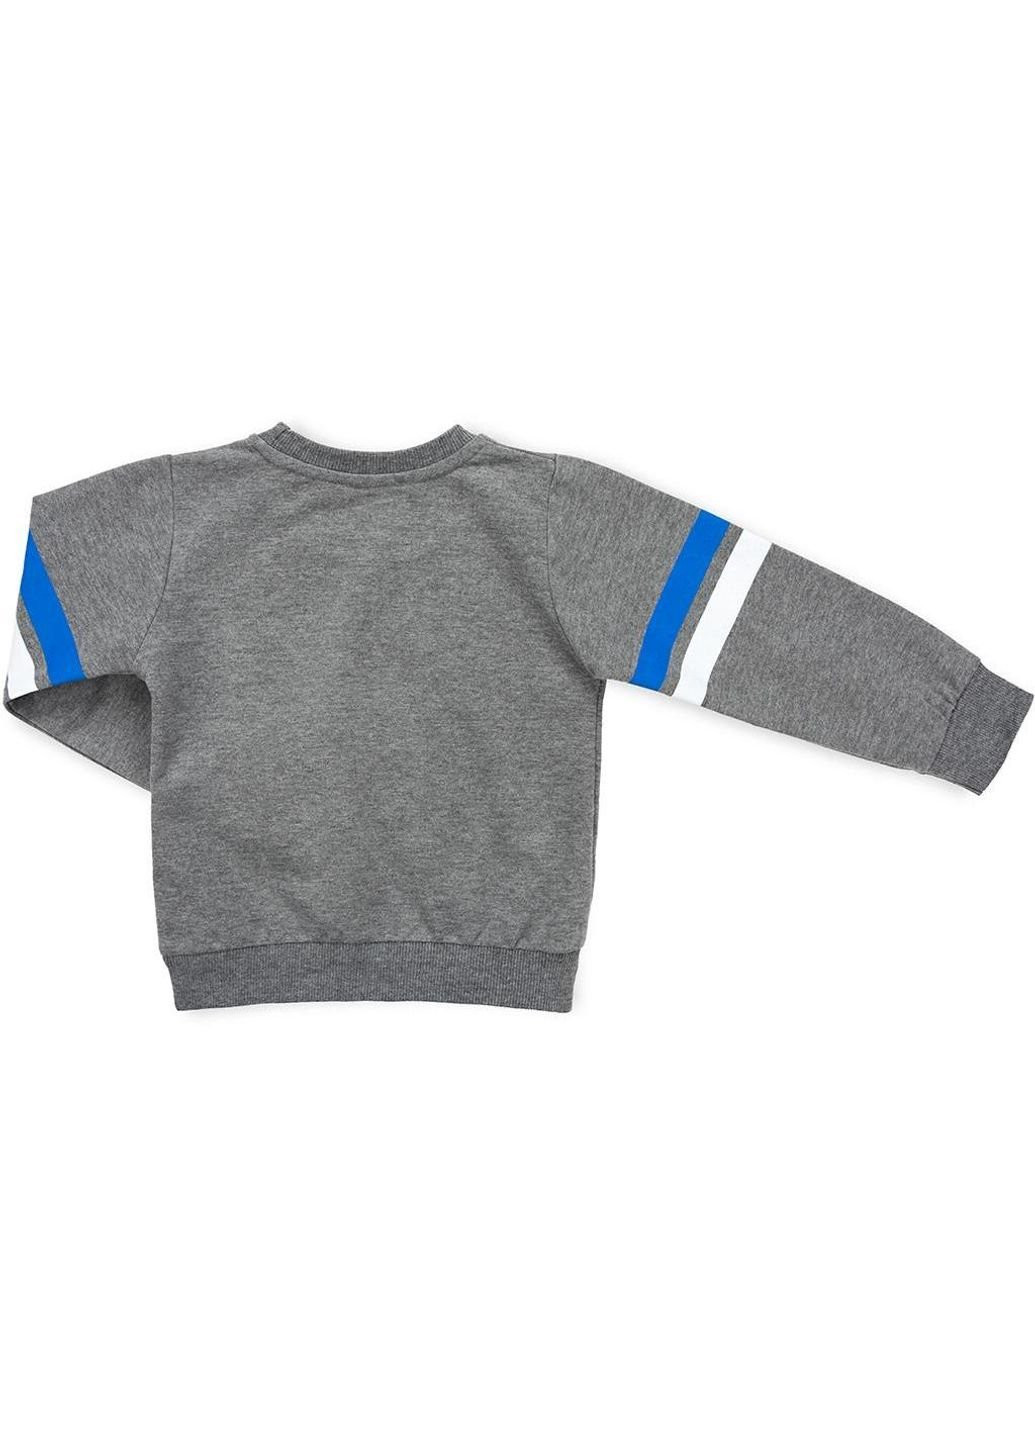 Сірий демісезонний набір дитячого одягу "new york" (11495-86b-gray) Breeze